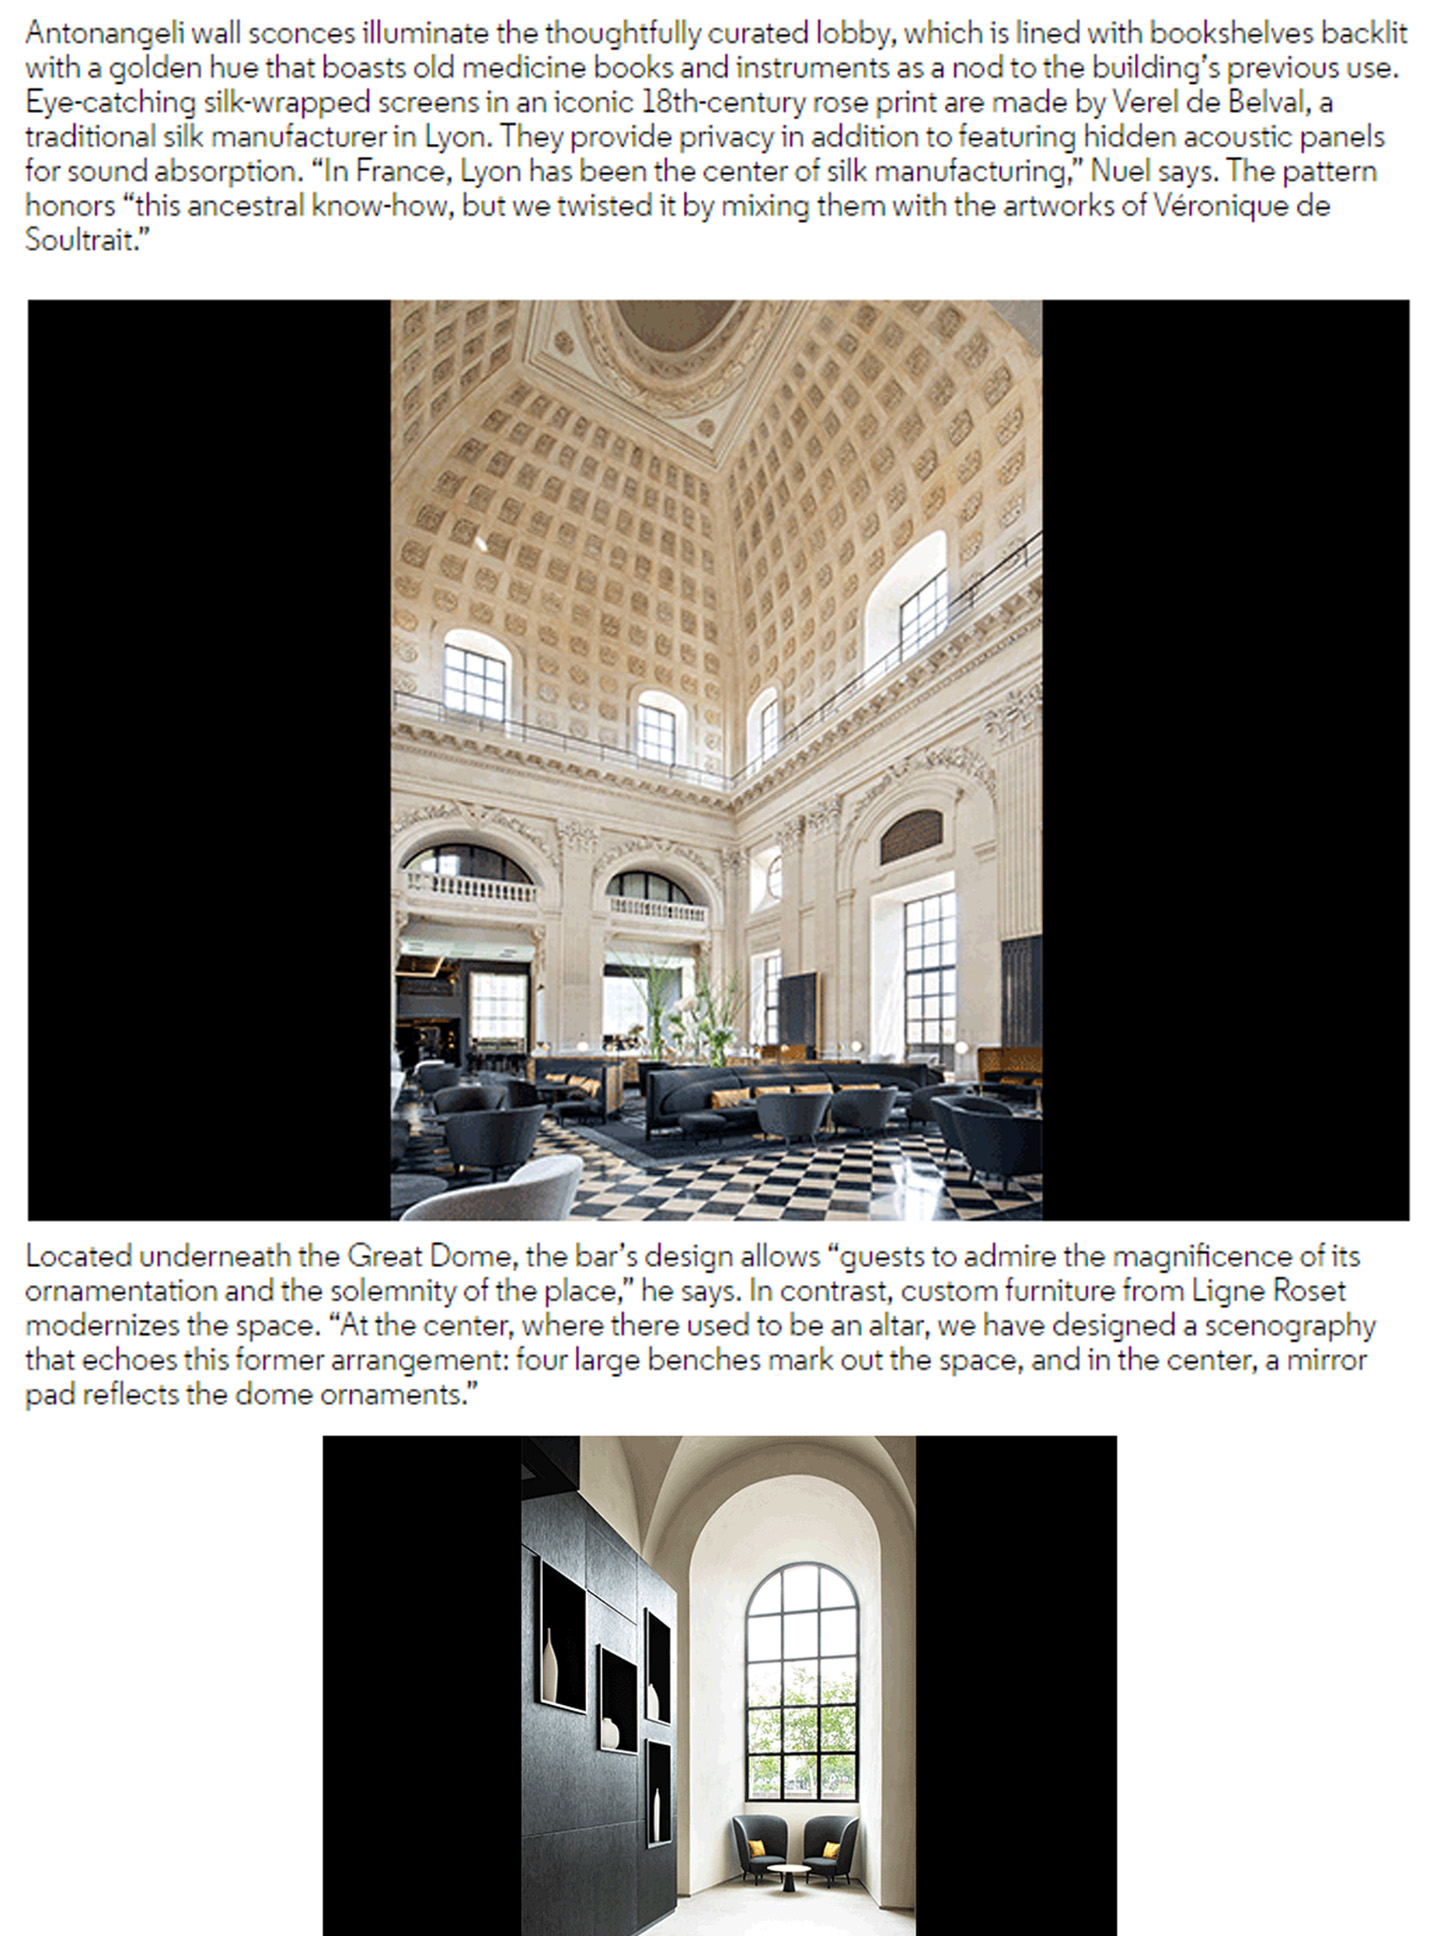 Article sur l'InterContinental Lyon Hotel Dieu réalisé par le studio jean-Philippe Nuel dans le magazineHospitality Design, nouvel hotel de luxe, architecture d'intérieur de luxe, patrimoine historique